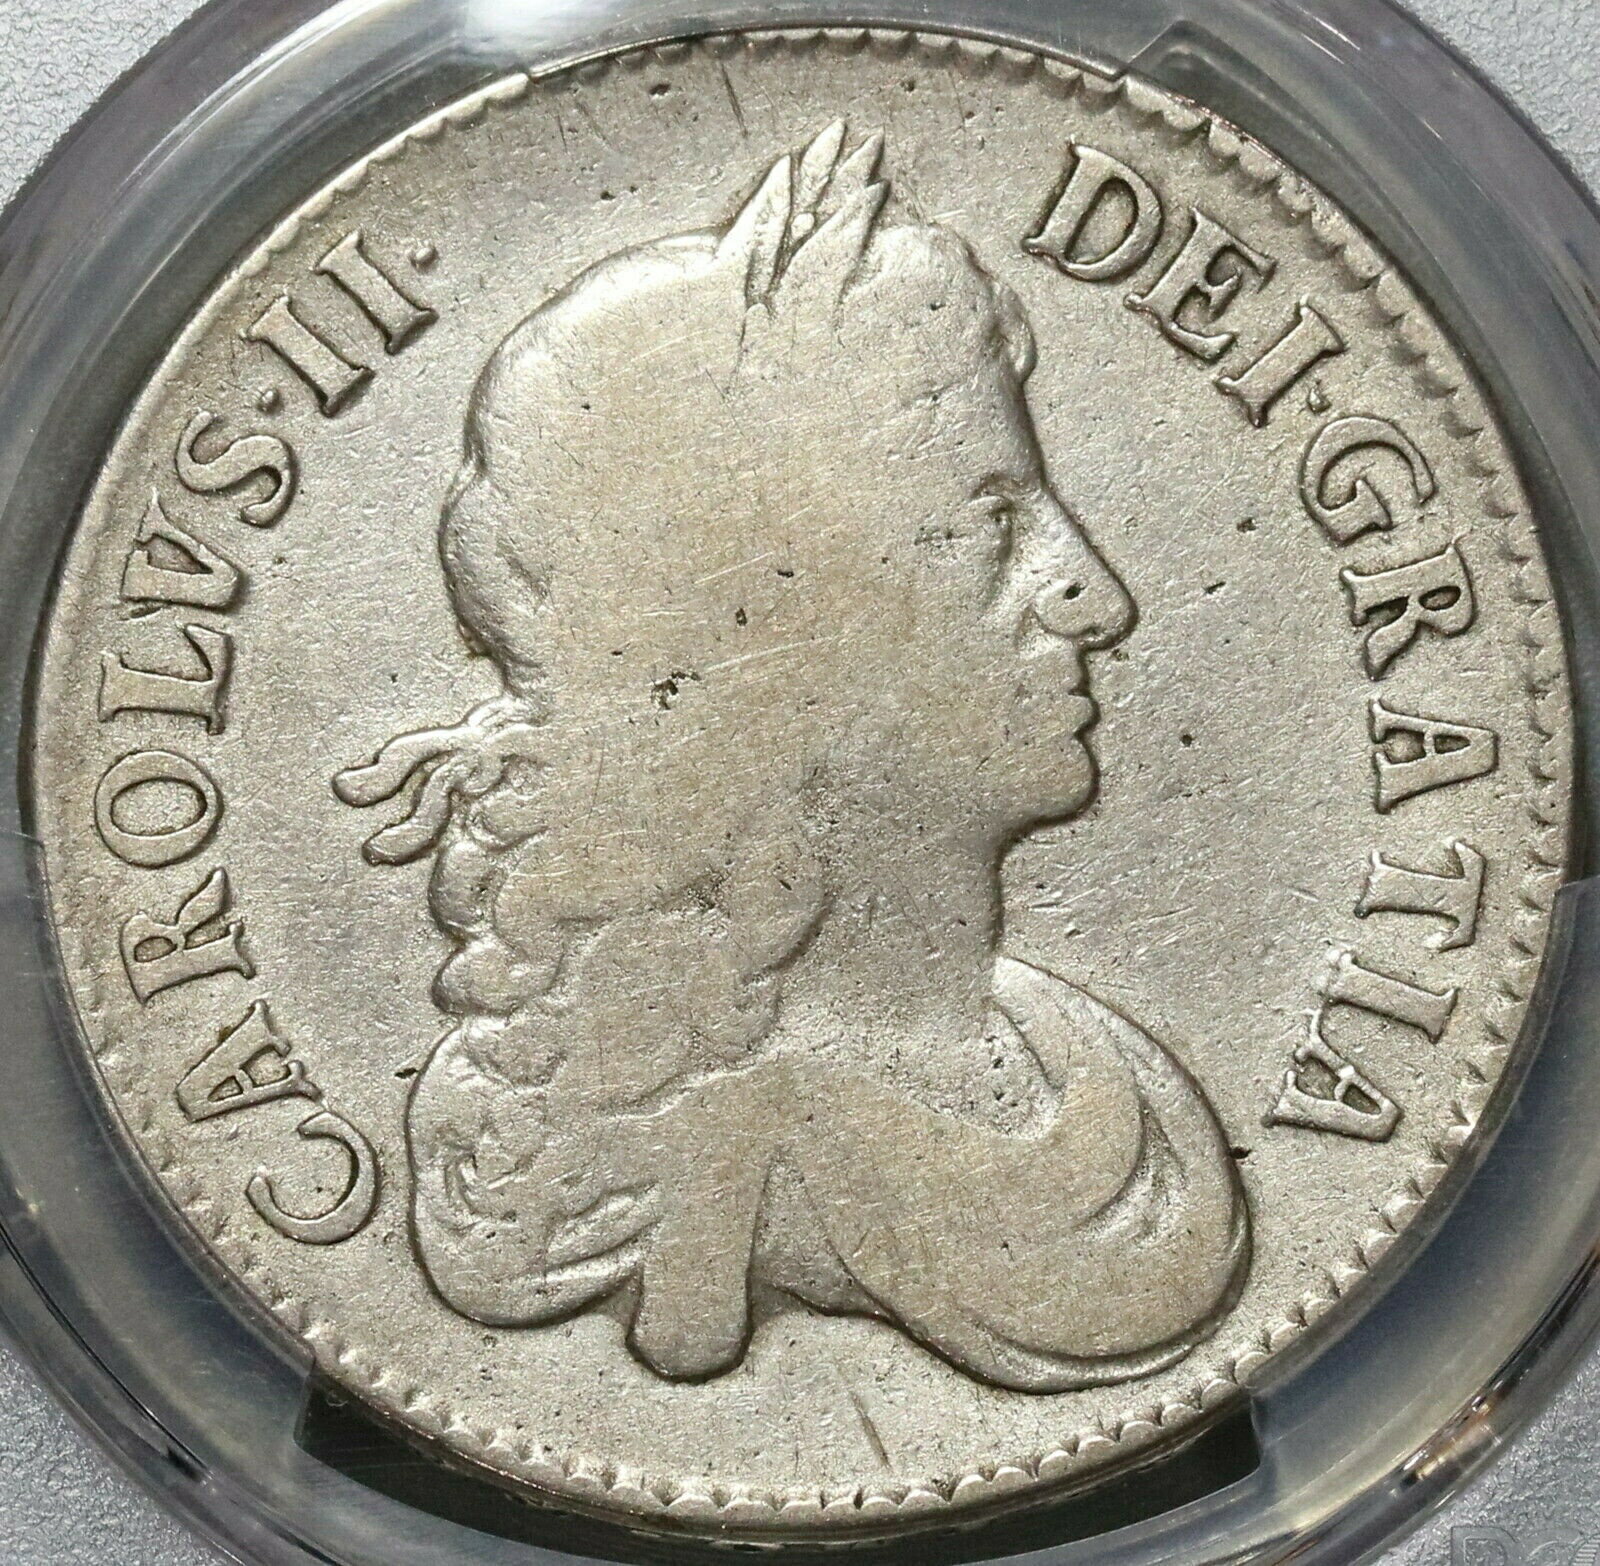 【極美品/品質保証書付】 アンティークコイン コイン 金貨 銀貨 [送料無料] 1671 PCGS VG 10 Charles II Crown Rare Legend Error Great Britain Coin (20020801C